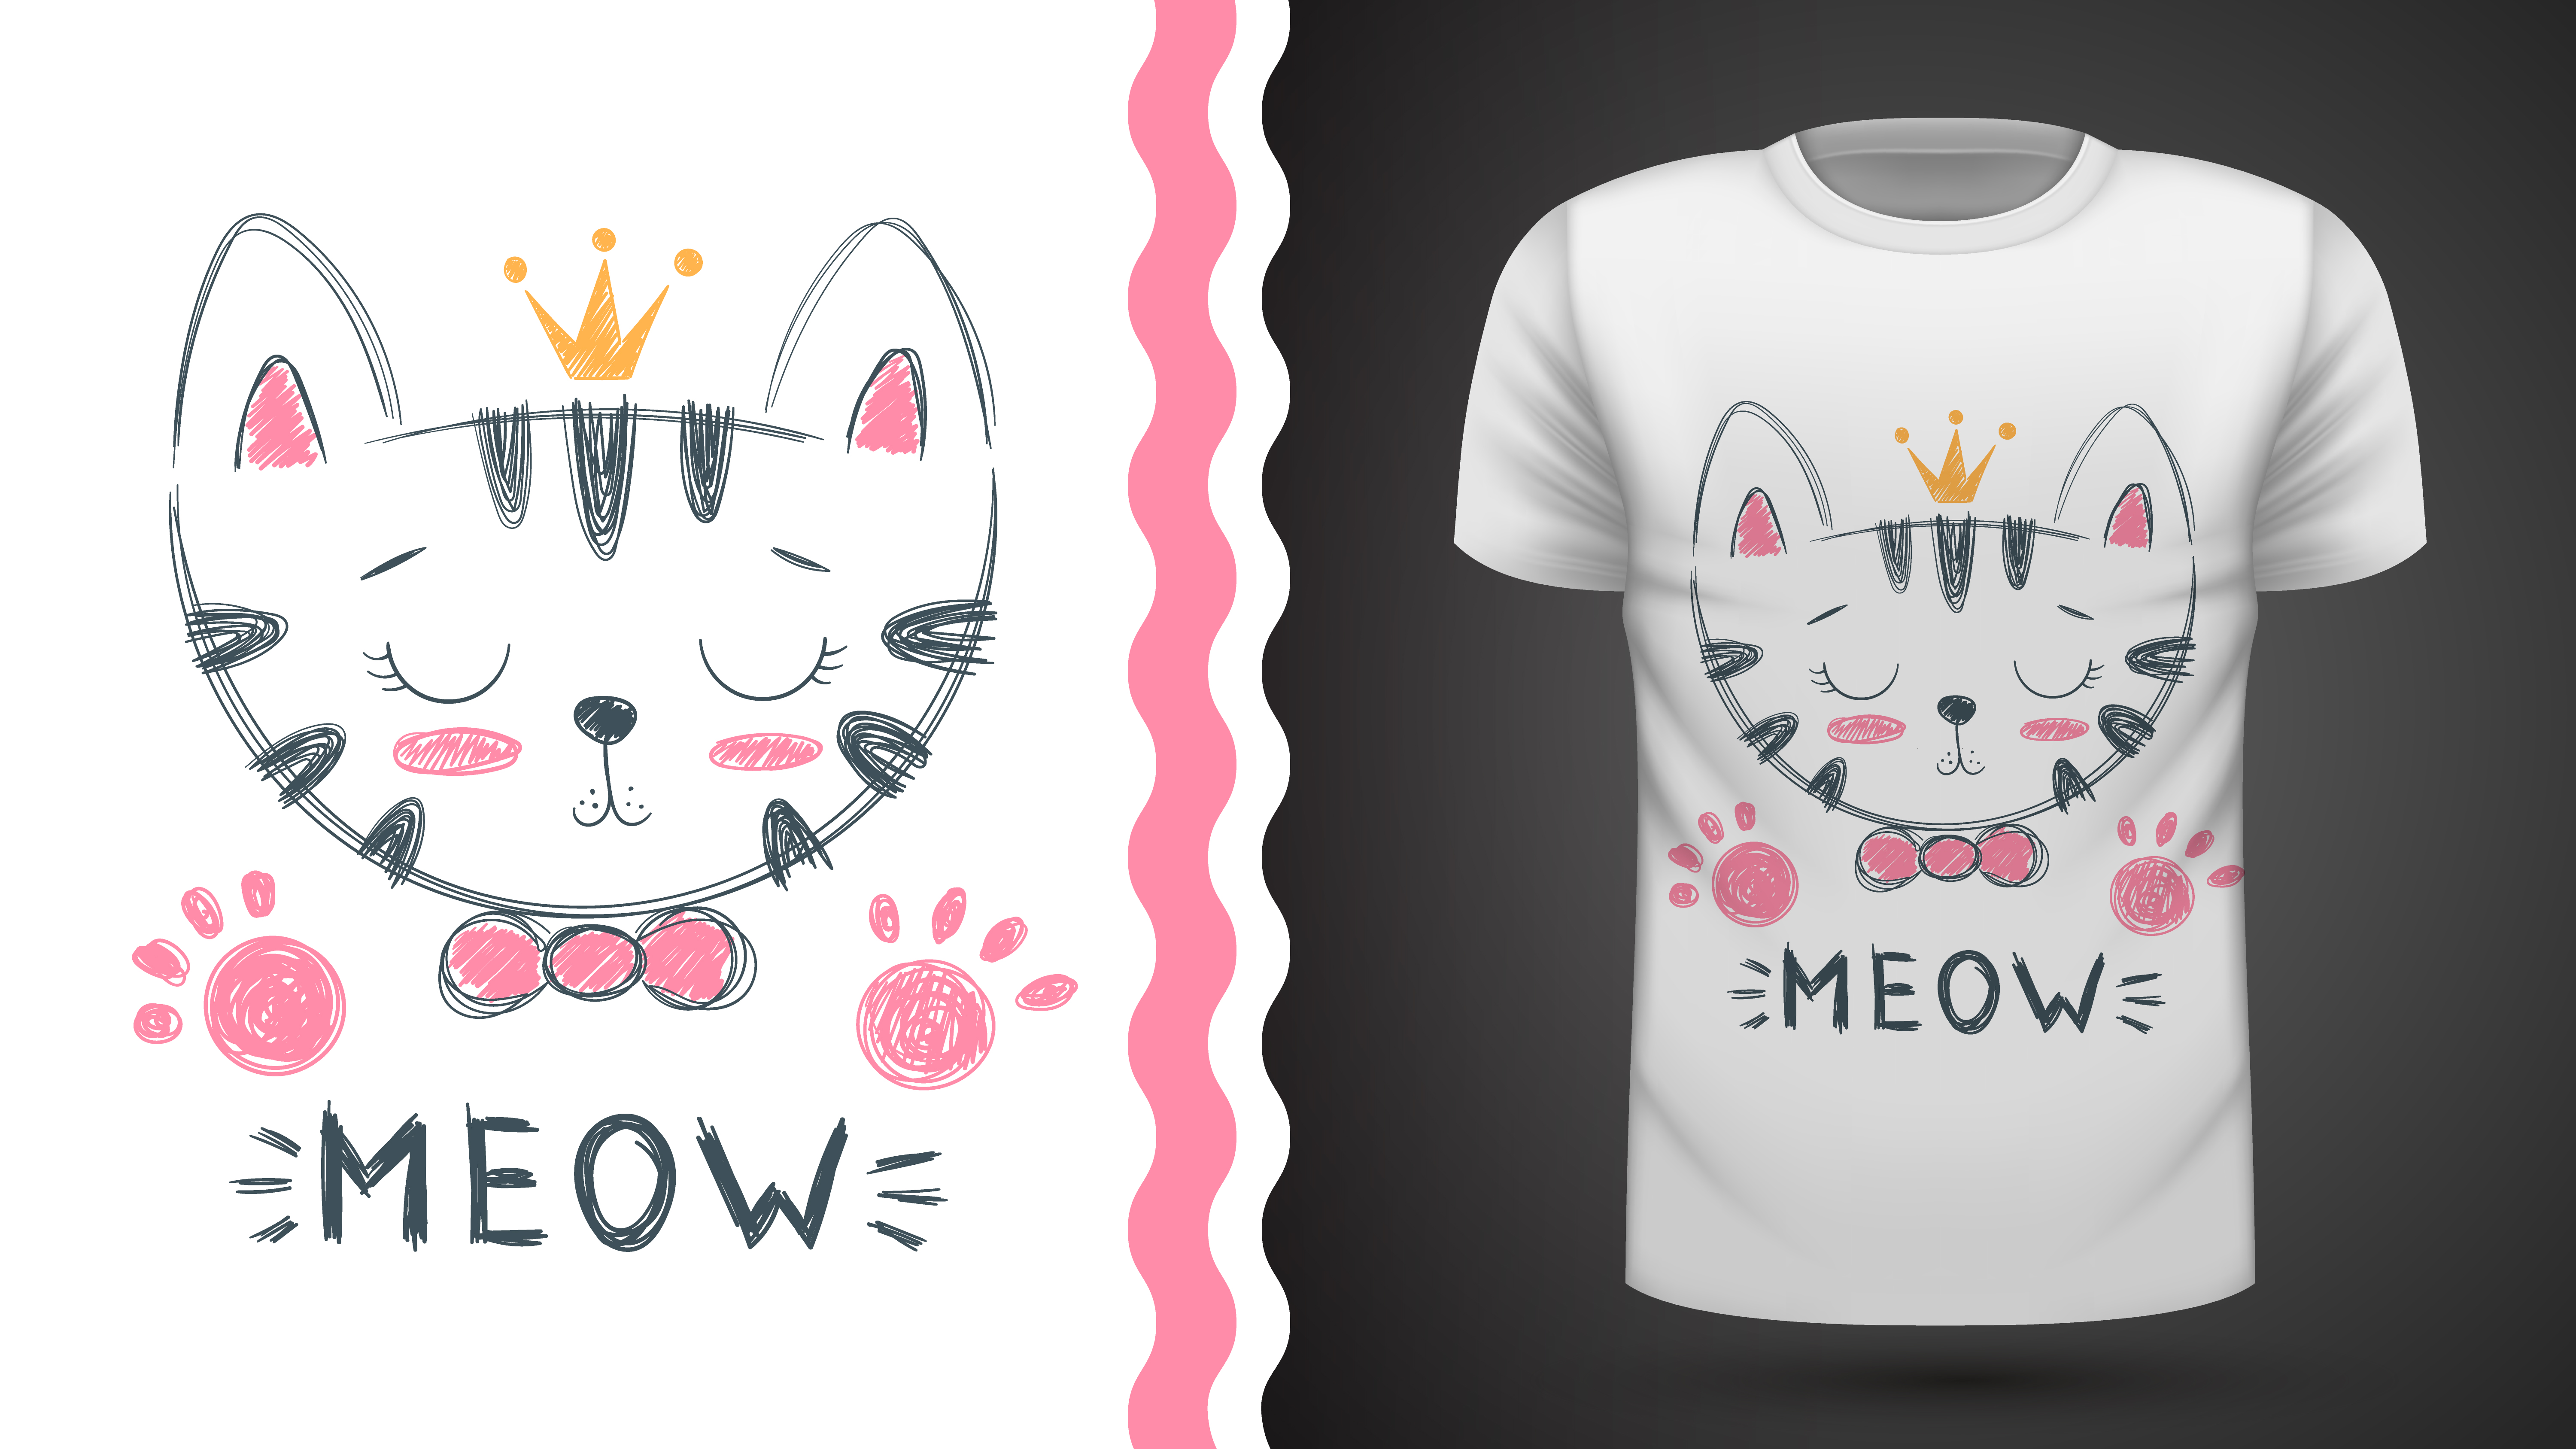 Кошка на футболке рисунок. Кот в футболке вектор. Милый котик на футболку нарисованный. Принт на футболке кошка на булавке. Little meow тг